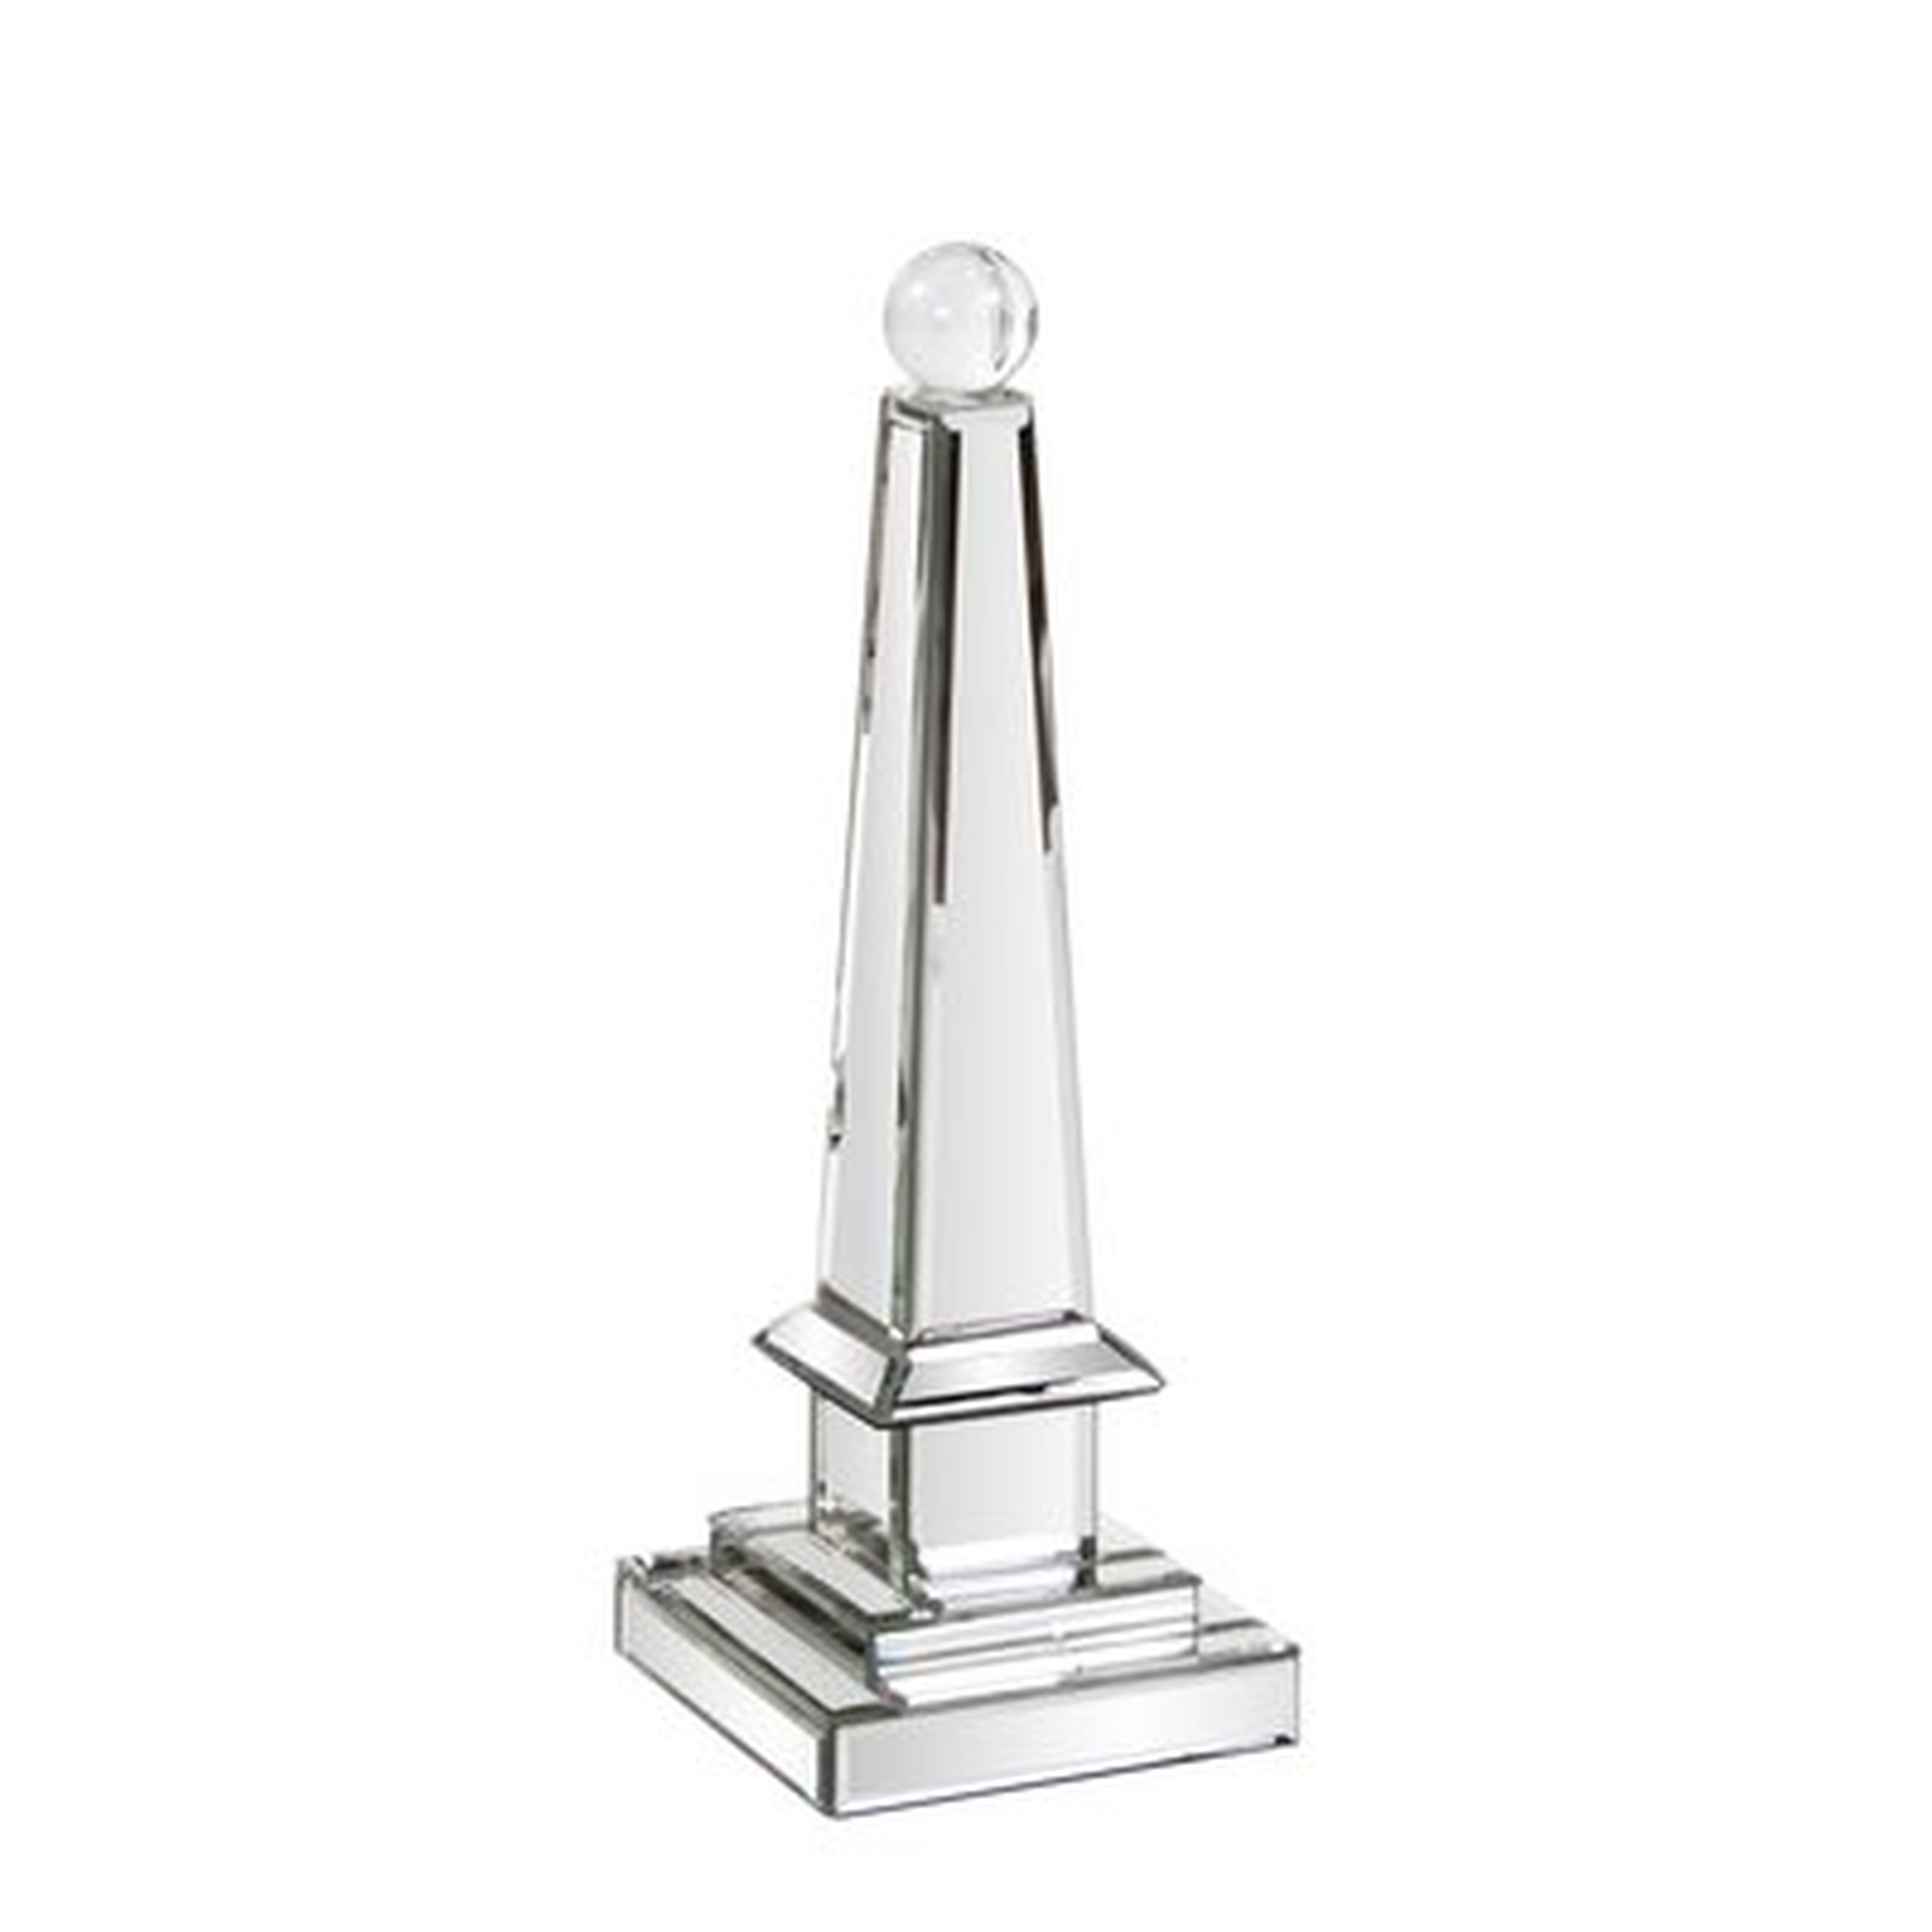 Hess Mirrored Obelisk with Glass Ball Sculpture - Wayfair